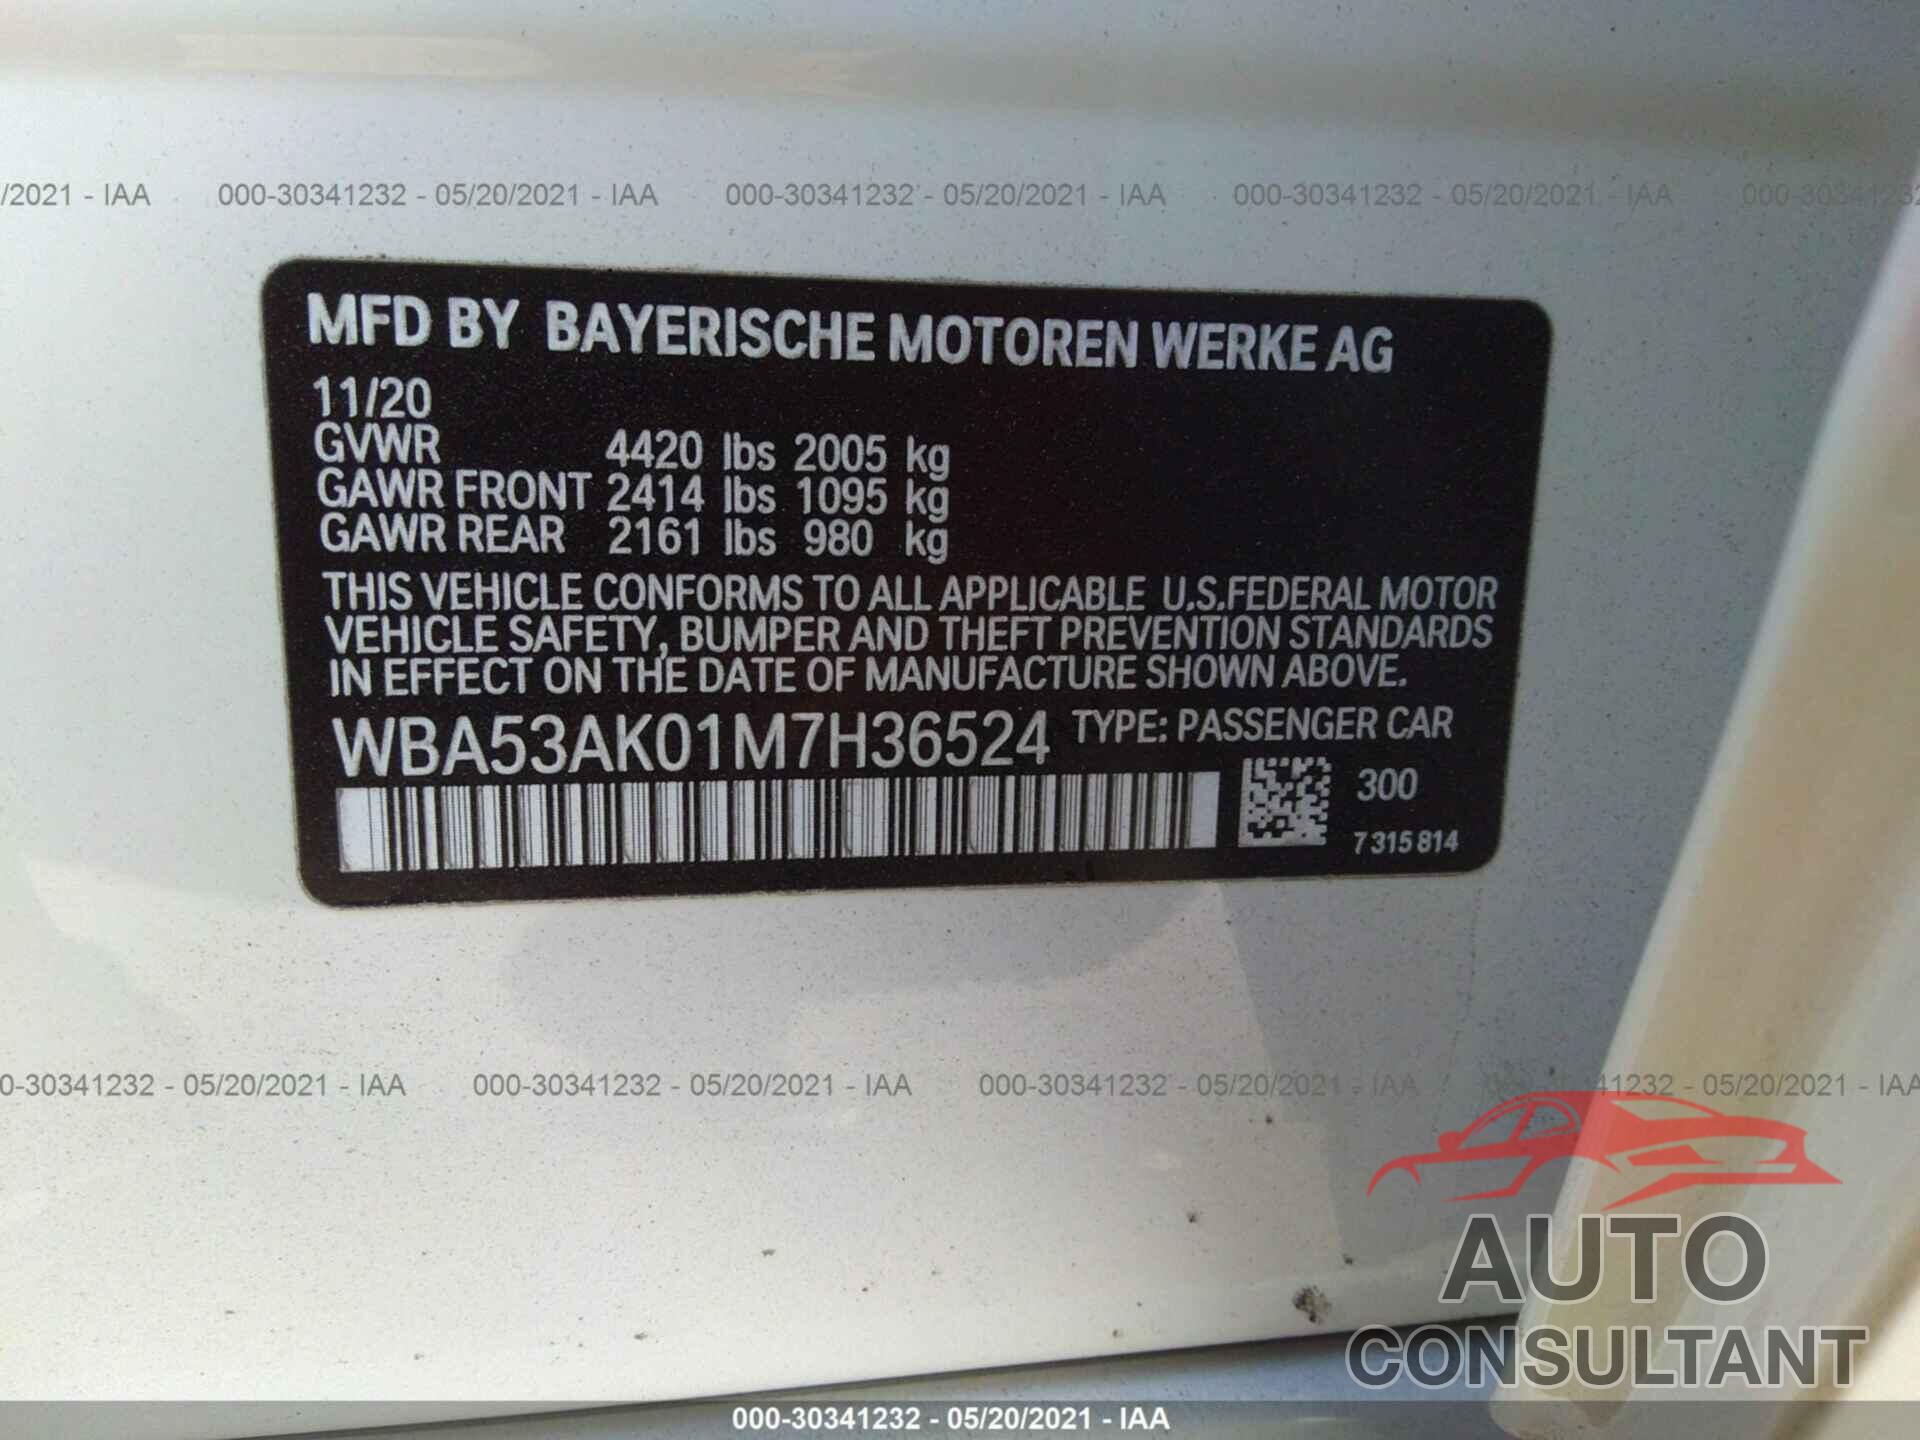 BMW 2 SERIES 2021 - WBA53AK01M7H36524